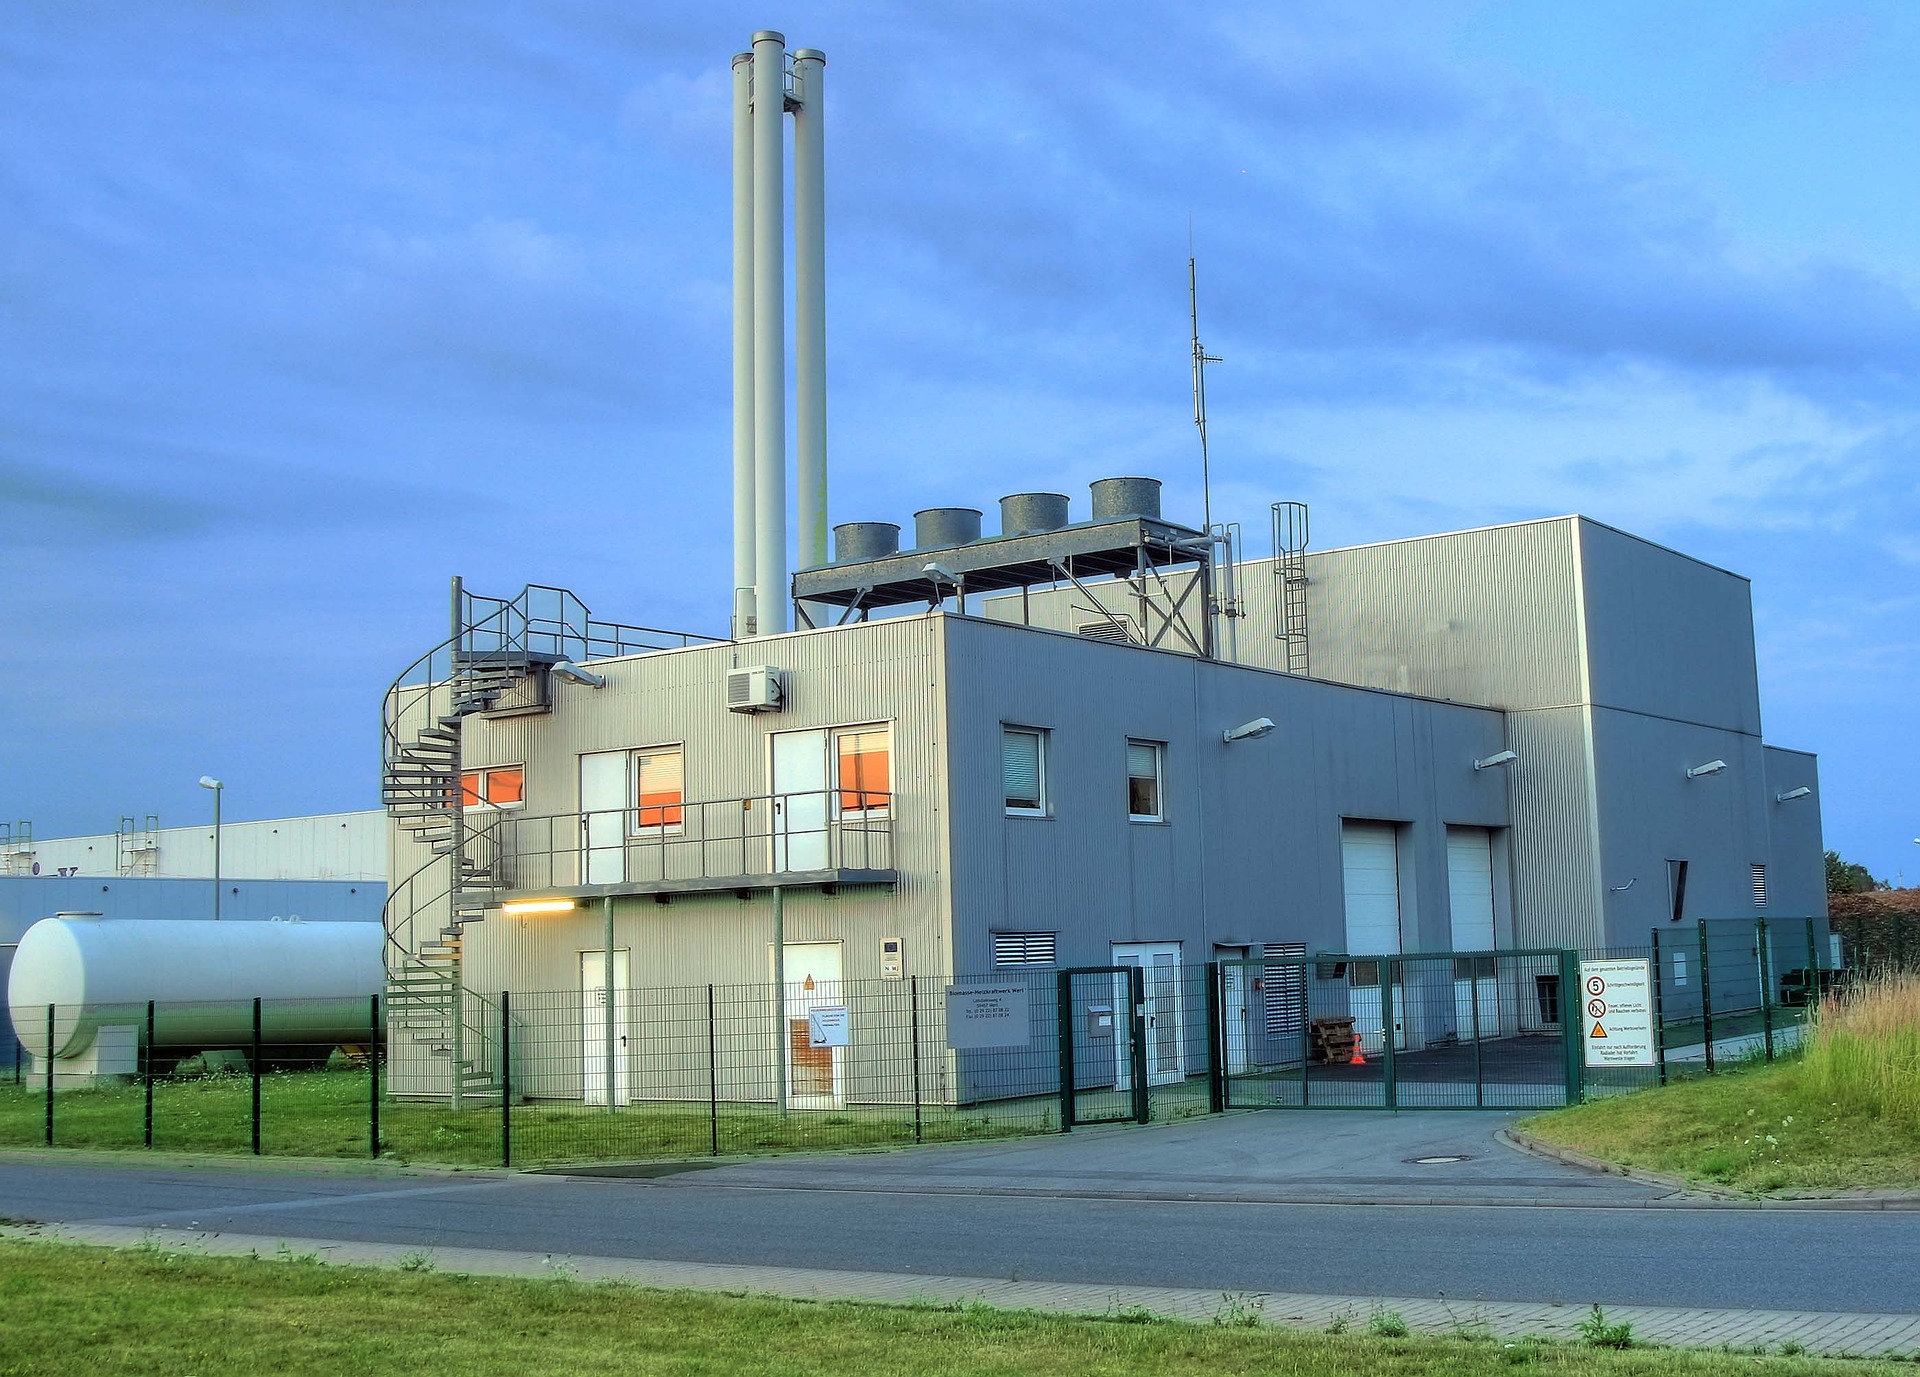 Image de centrale biomasse